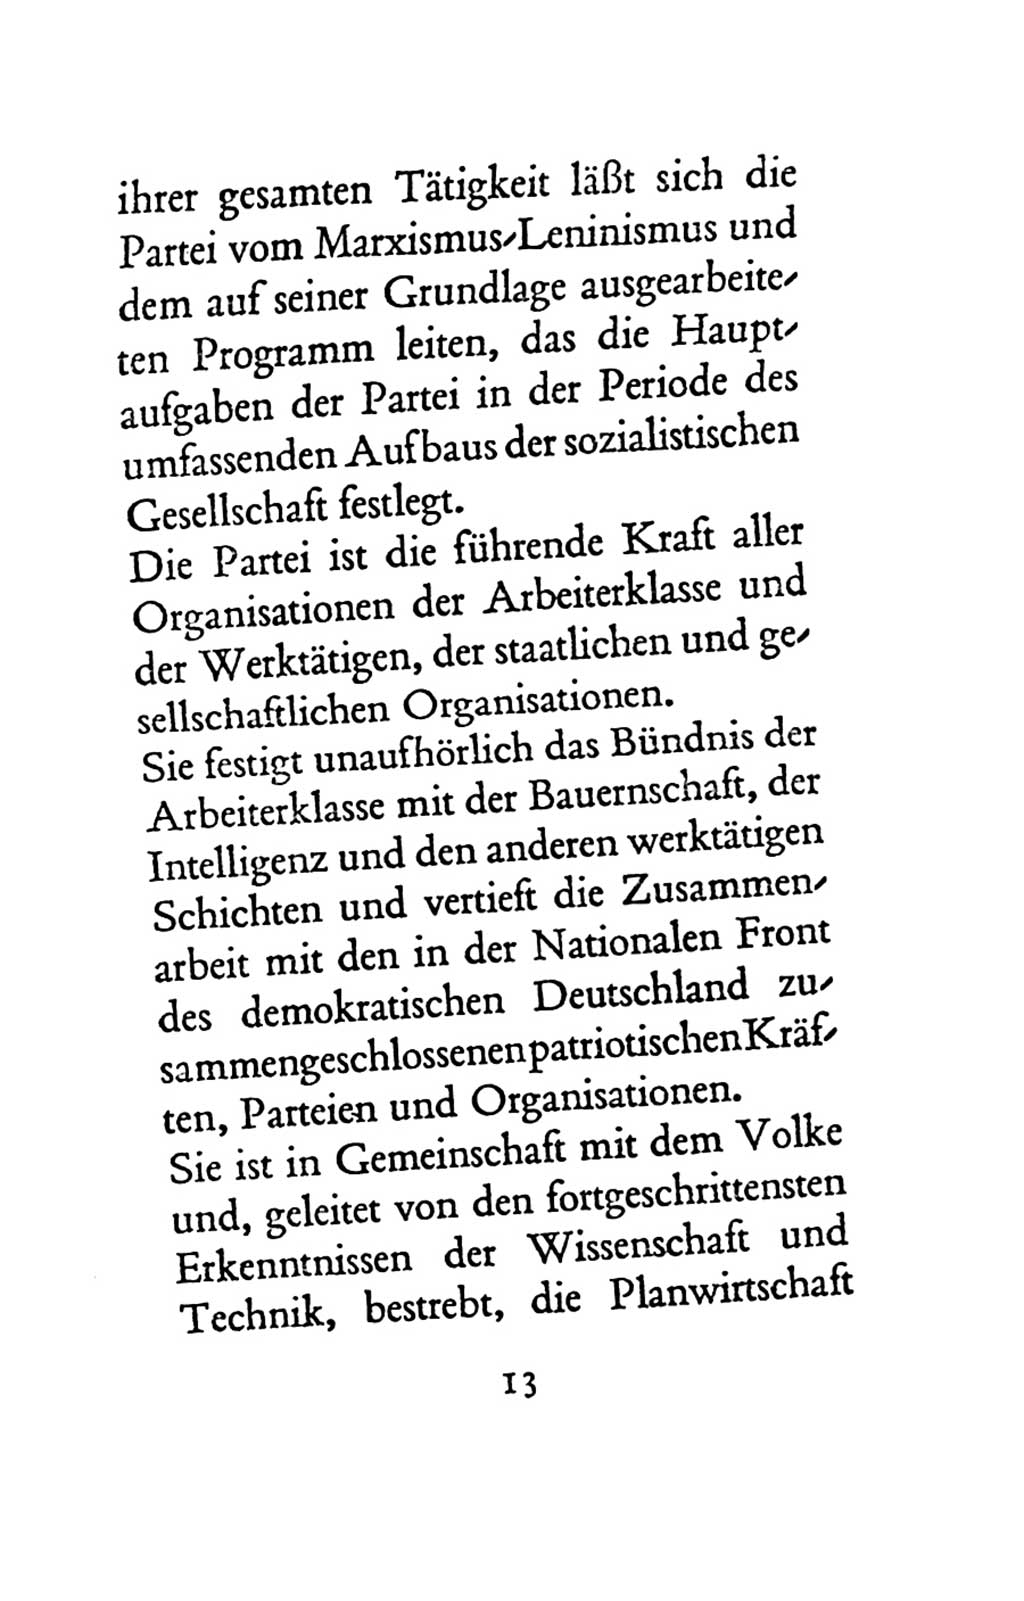 Statut der Sozialistischen Einheitspartei Deutschlands (SED) 1963, Seite 13 (St. SED DDR 1963, S. 13)